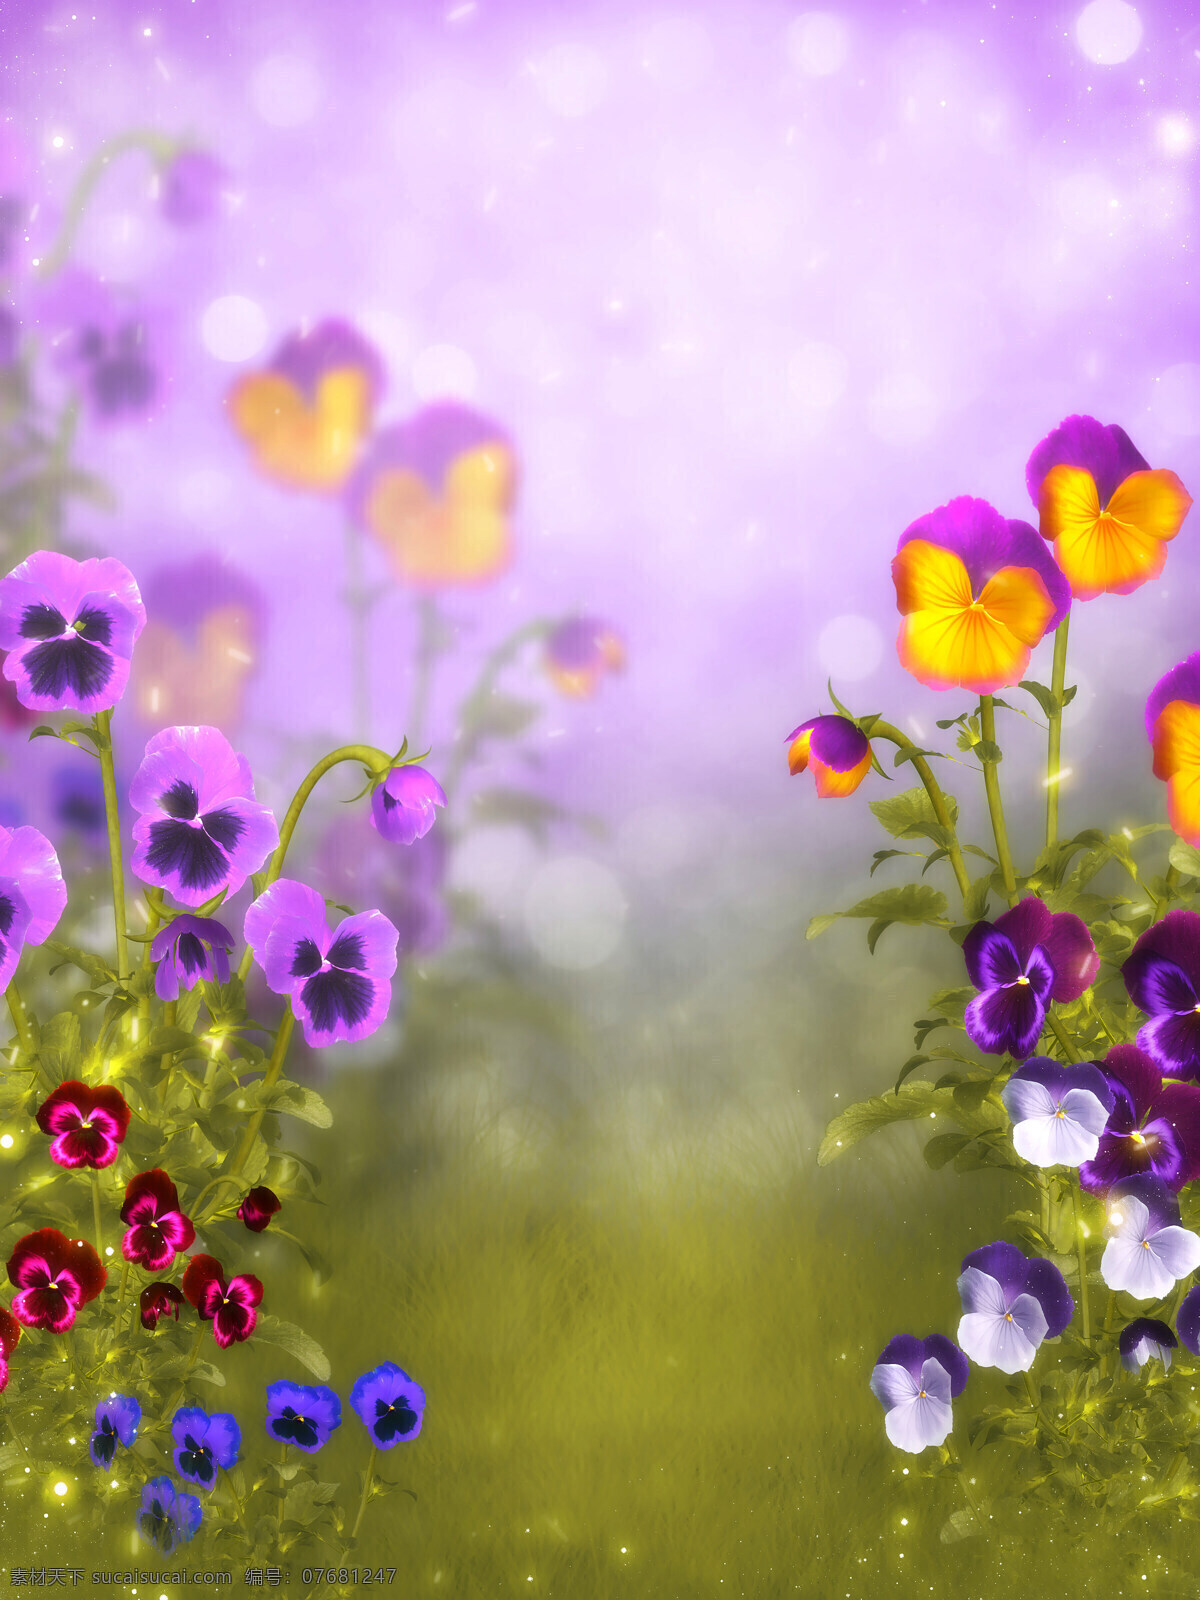 三色堇 背景 素材图片 自然 风景 花卉 花朵 美丽 清新 免费素材下载 背景墙 背景图 装饰画 蝴蝶花